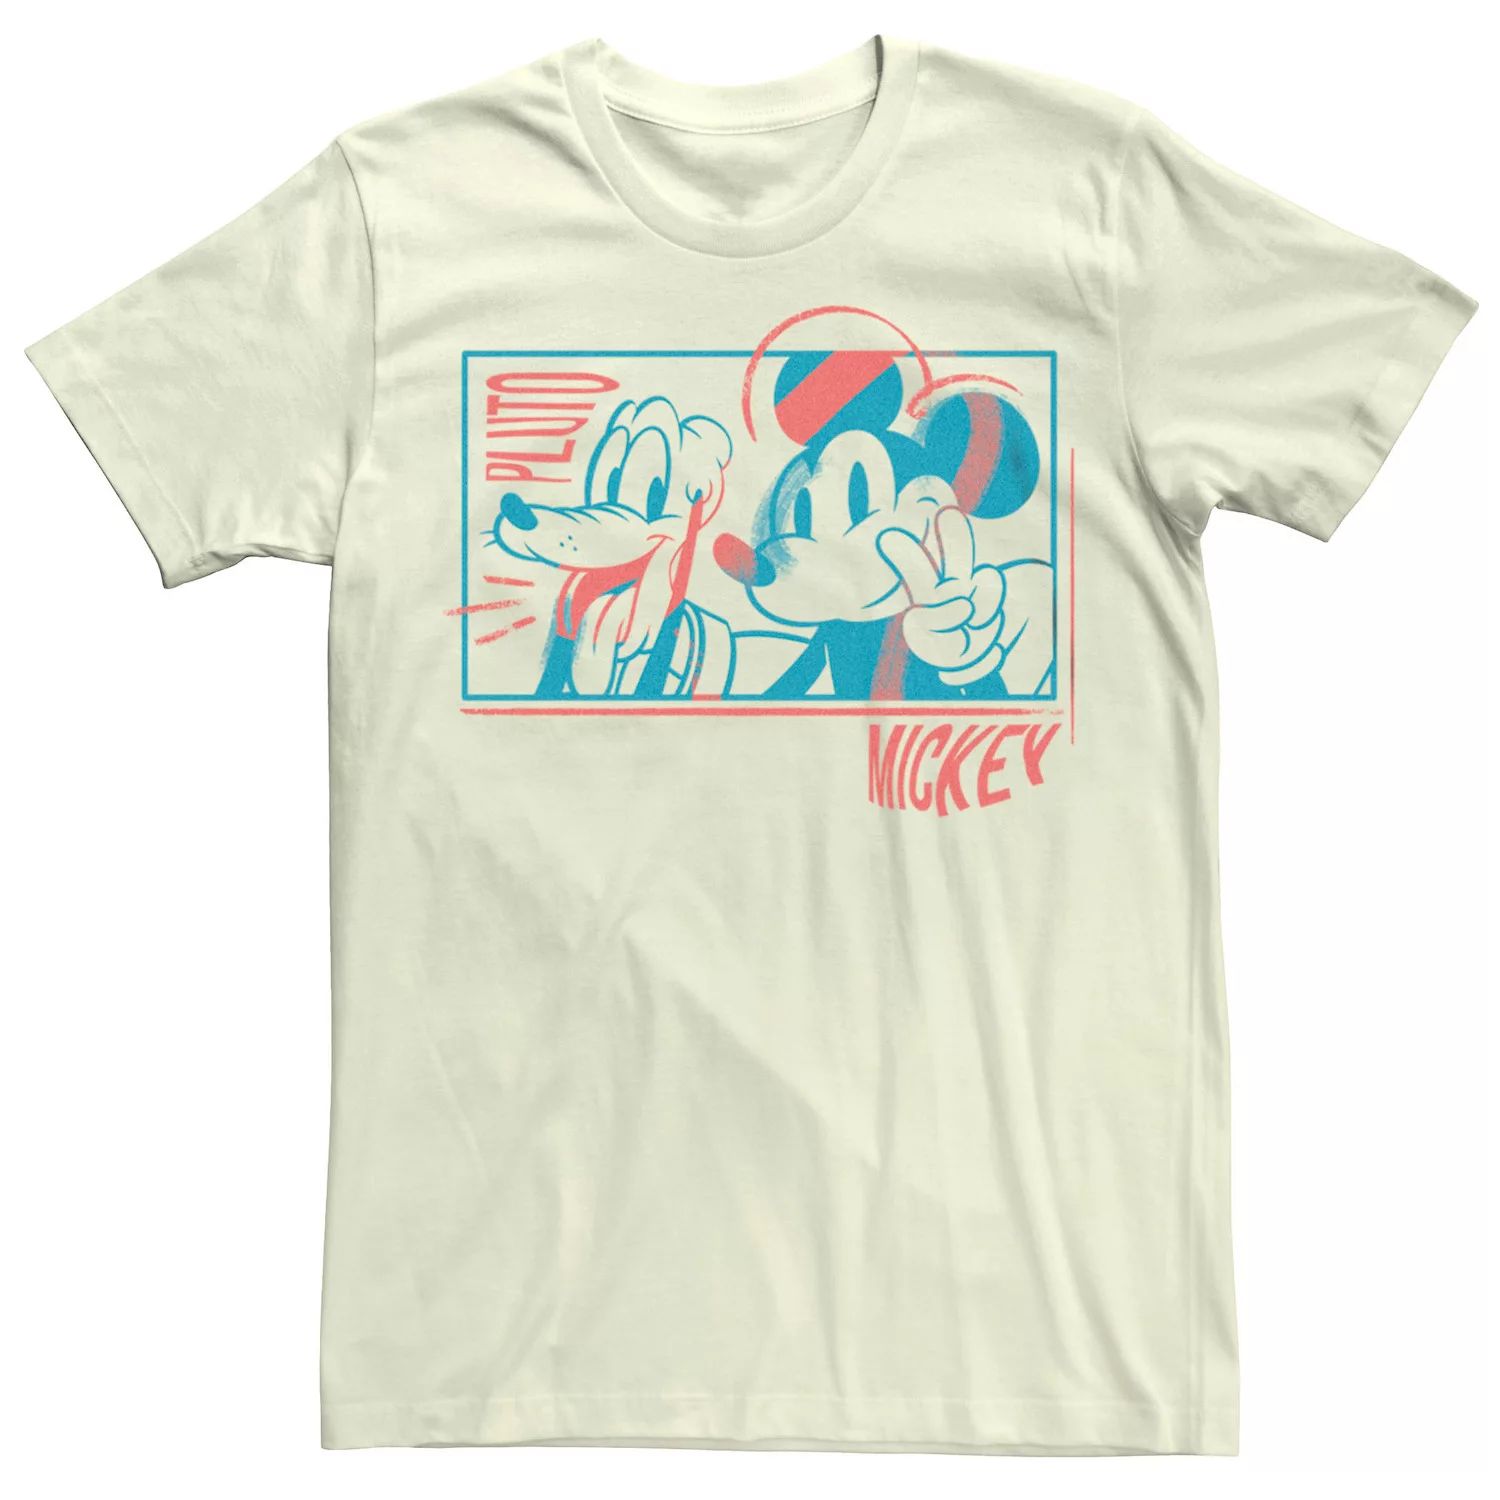 Мужская футболка Disney с Микки Маусом Плутон и Микки Маусом Licensed Character футболка с надписью я спросил с предложением помолвки с микки маусом от disney licensed character